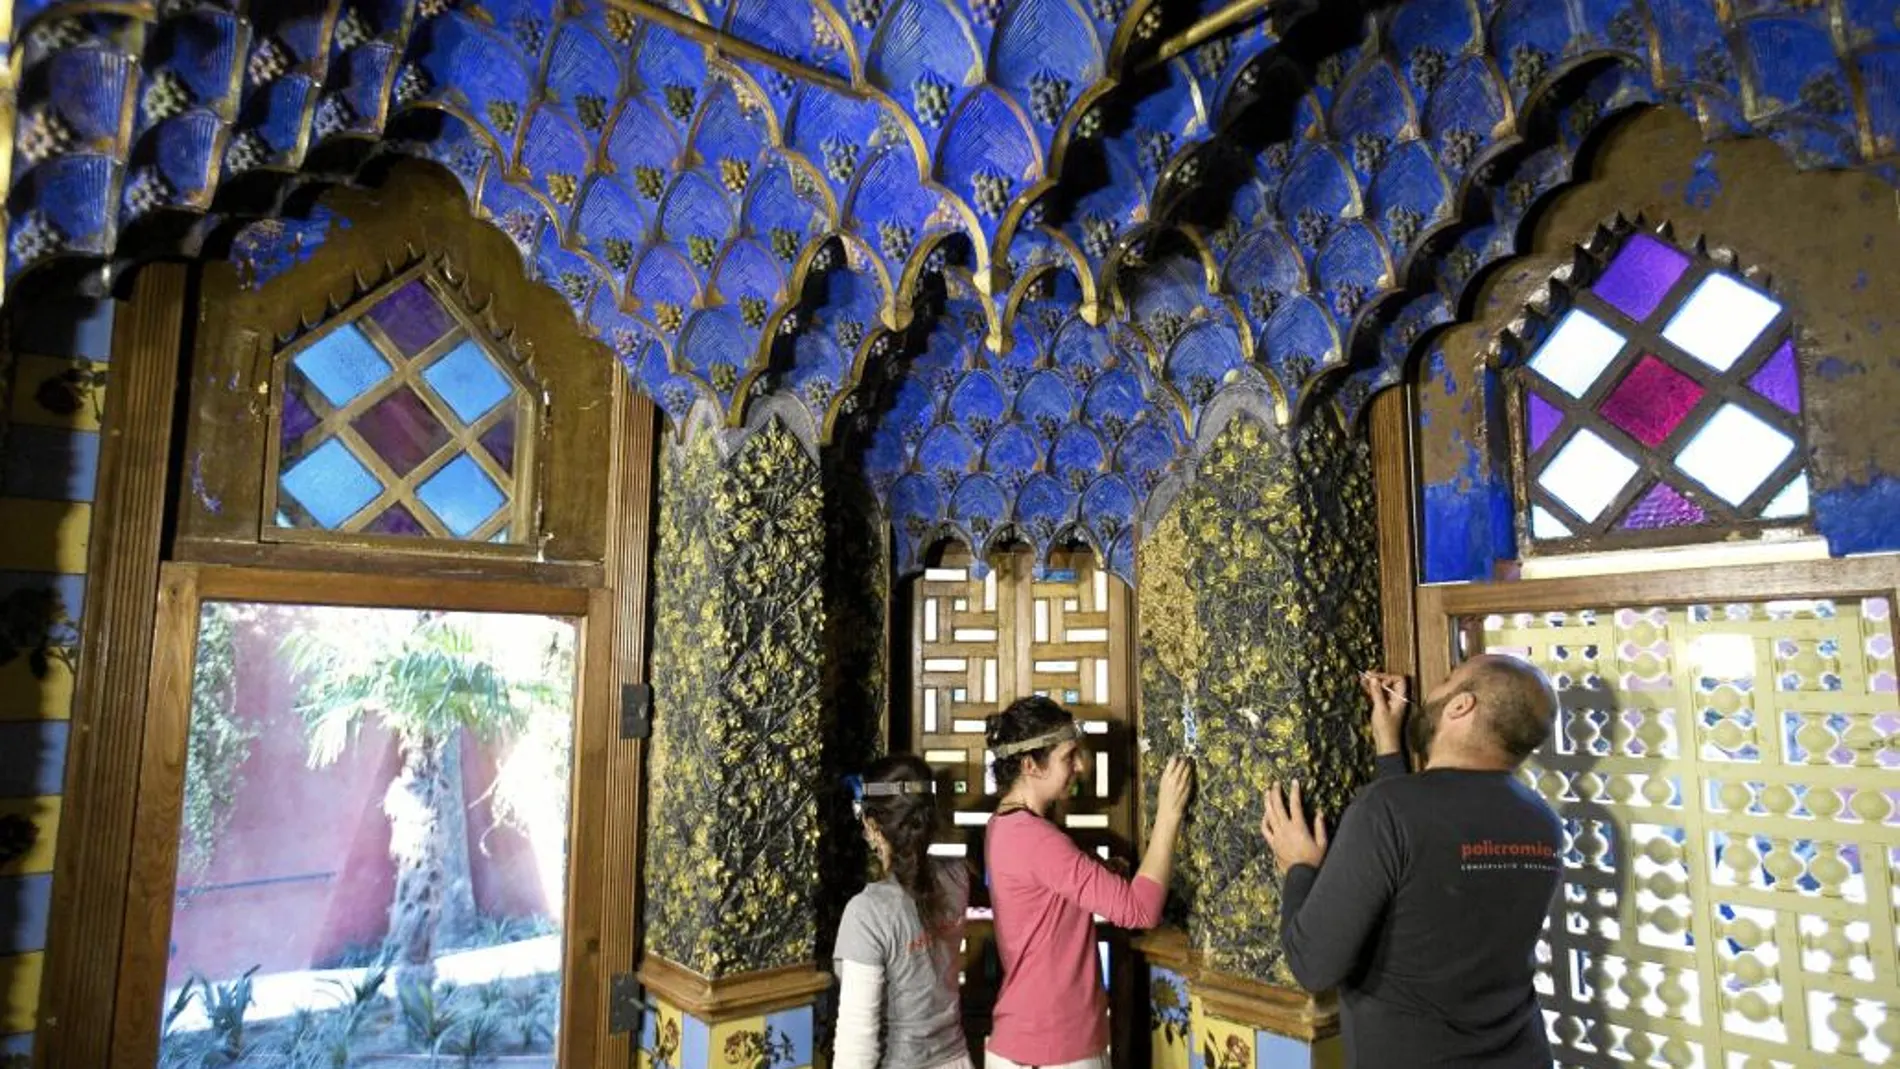 Tanto por la orientalista aproximación de Gaudí de la fachada, como por la rica y original ornamentación interior, Casa Vives enamora a primera vista.